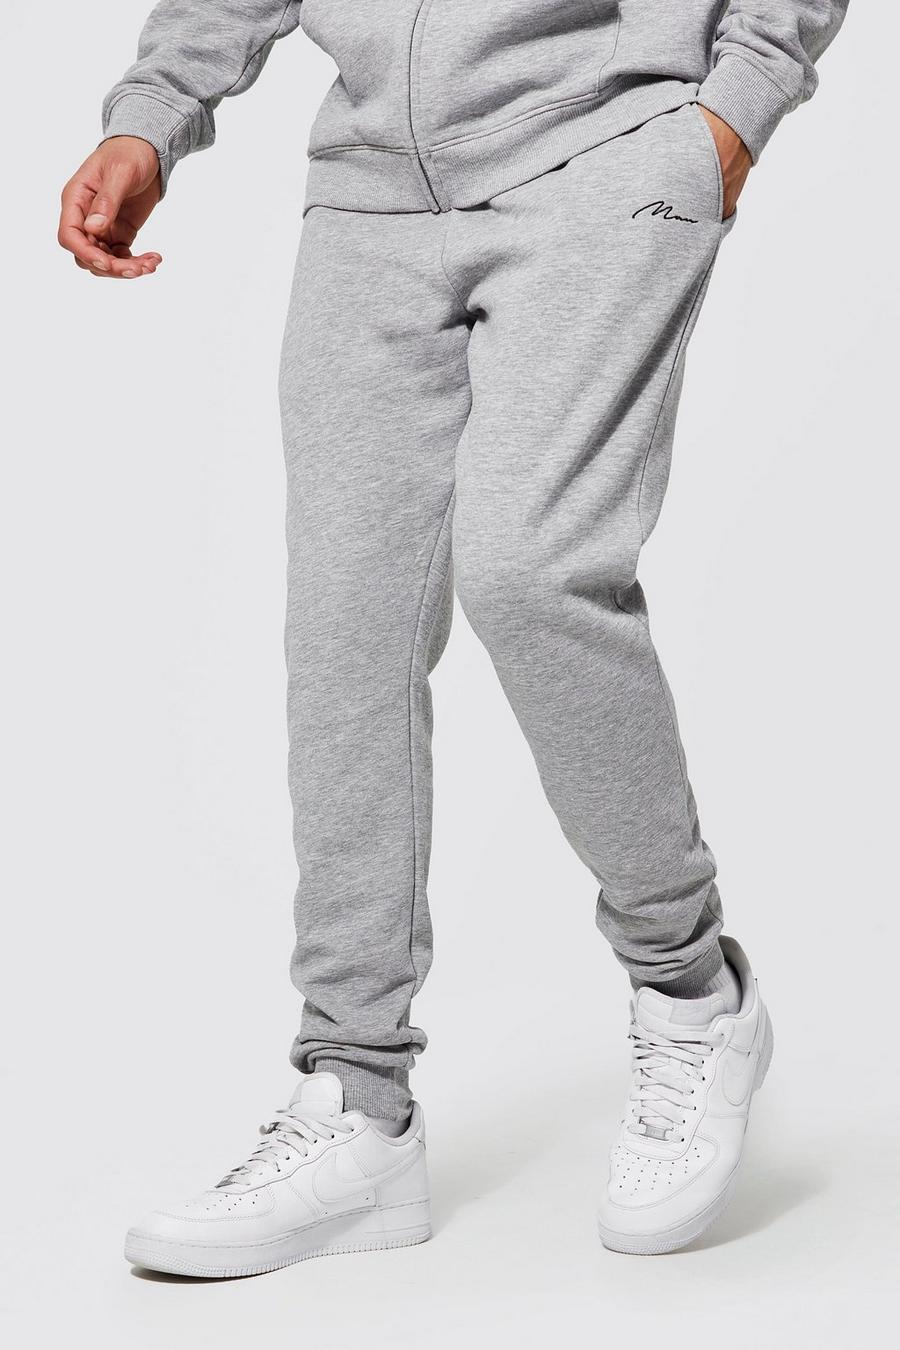 סלע אפור gris מכנסי ריצה סקיני מבד משולב בכותנת REEL עם כיתוב Man, לגברים גבוהים image number 1